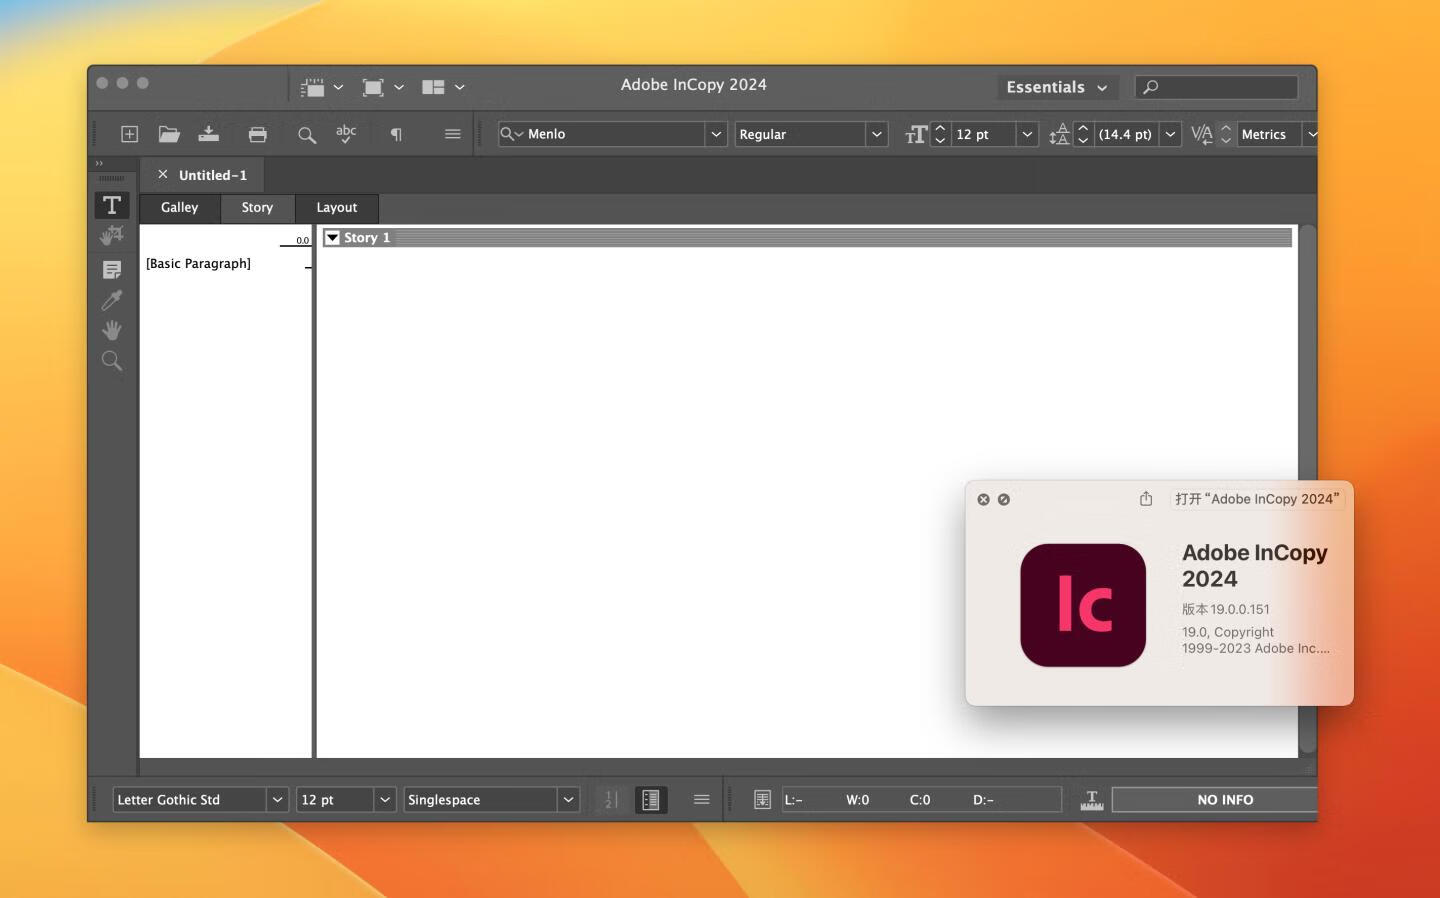 instal the new version for apple Adobe InDesign 2024 v19.0.0.151